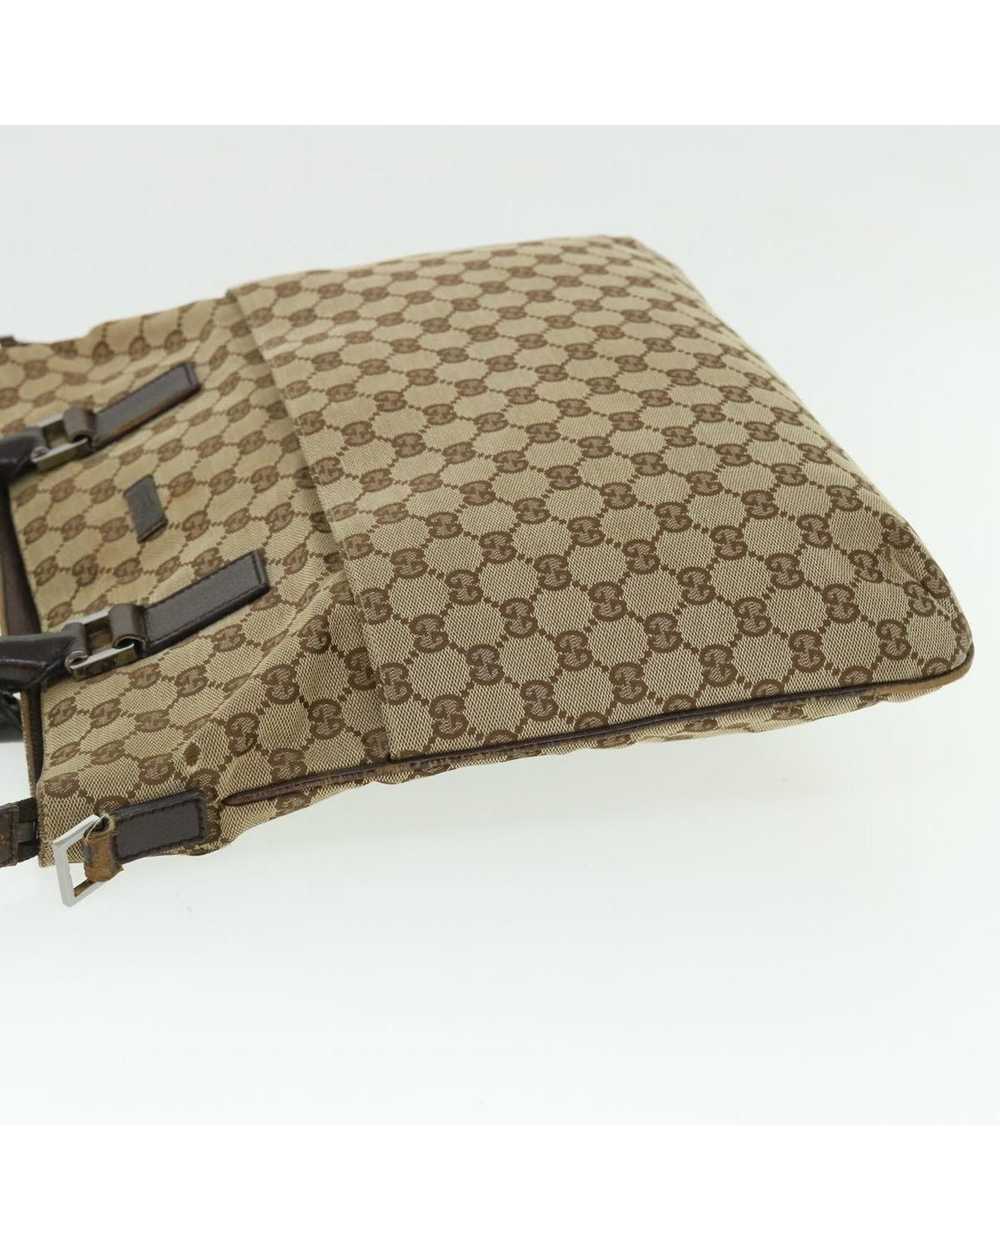 Gucci Beige Canvas Shoulder Bag with GG Design - image 5